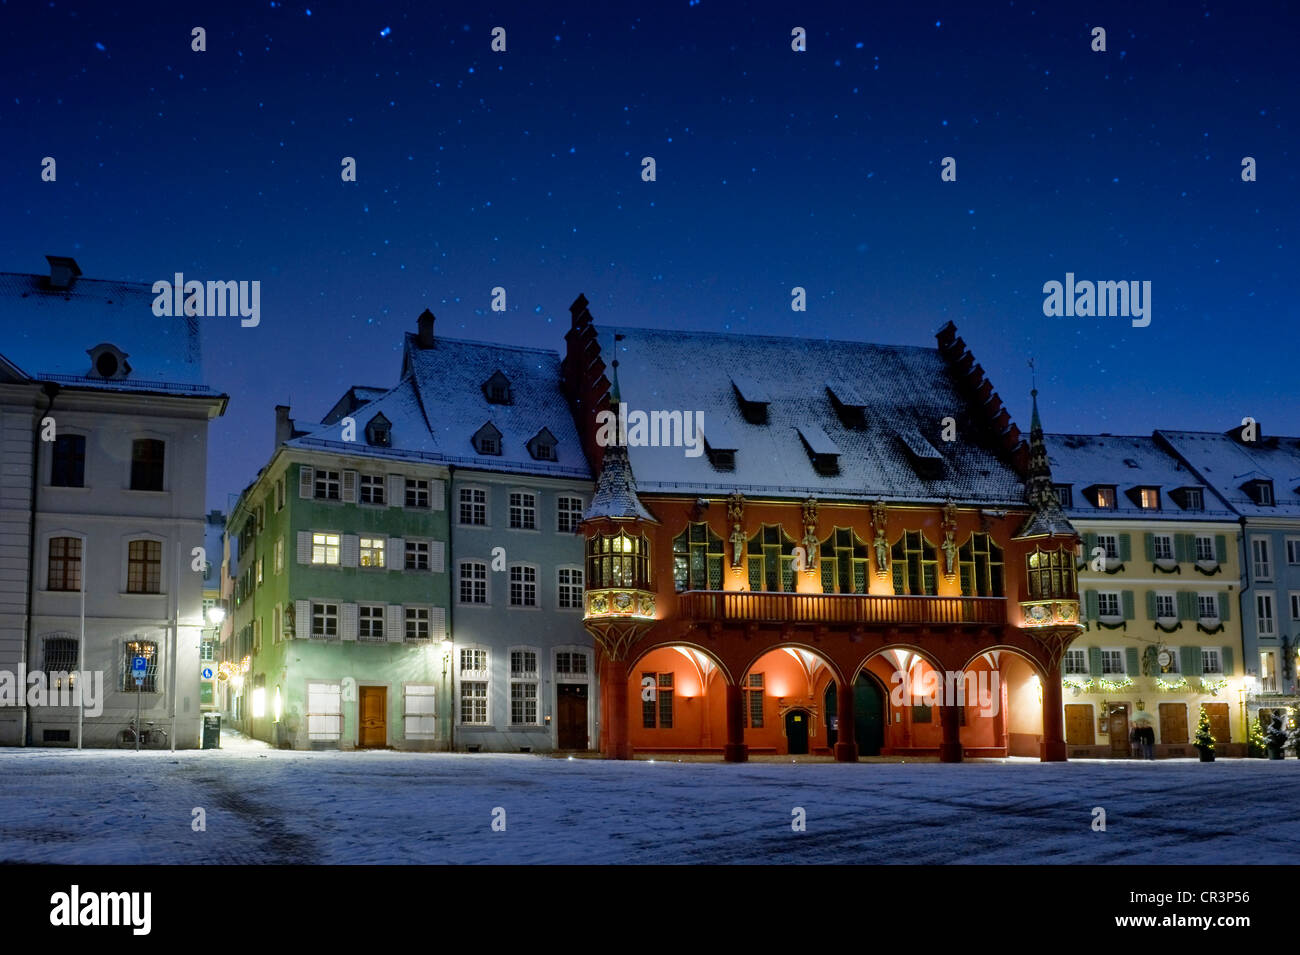 Winterliche Altstadt zur Weihnachtszeit, Muensterplatz Quadrat, Freiburg Im Breisgau, Baden-Württemberg, Deutschland, Europa Stockfoto